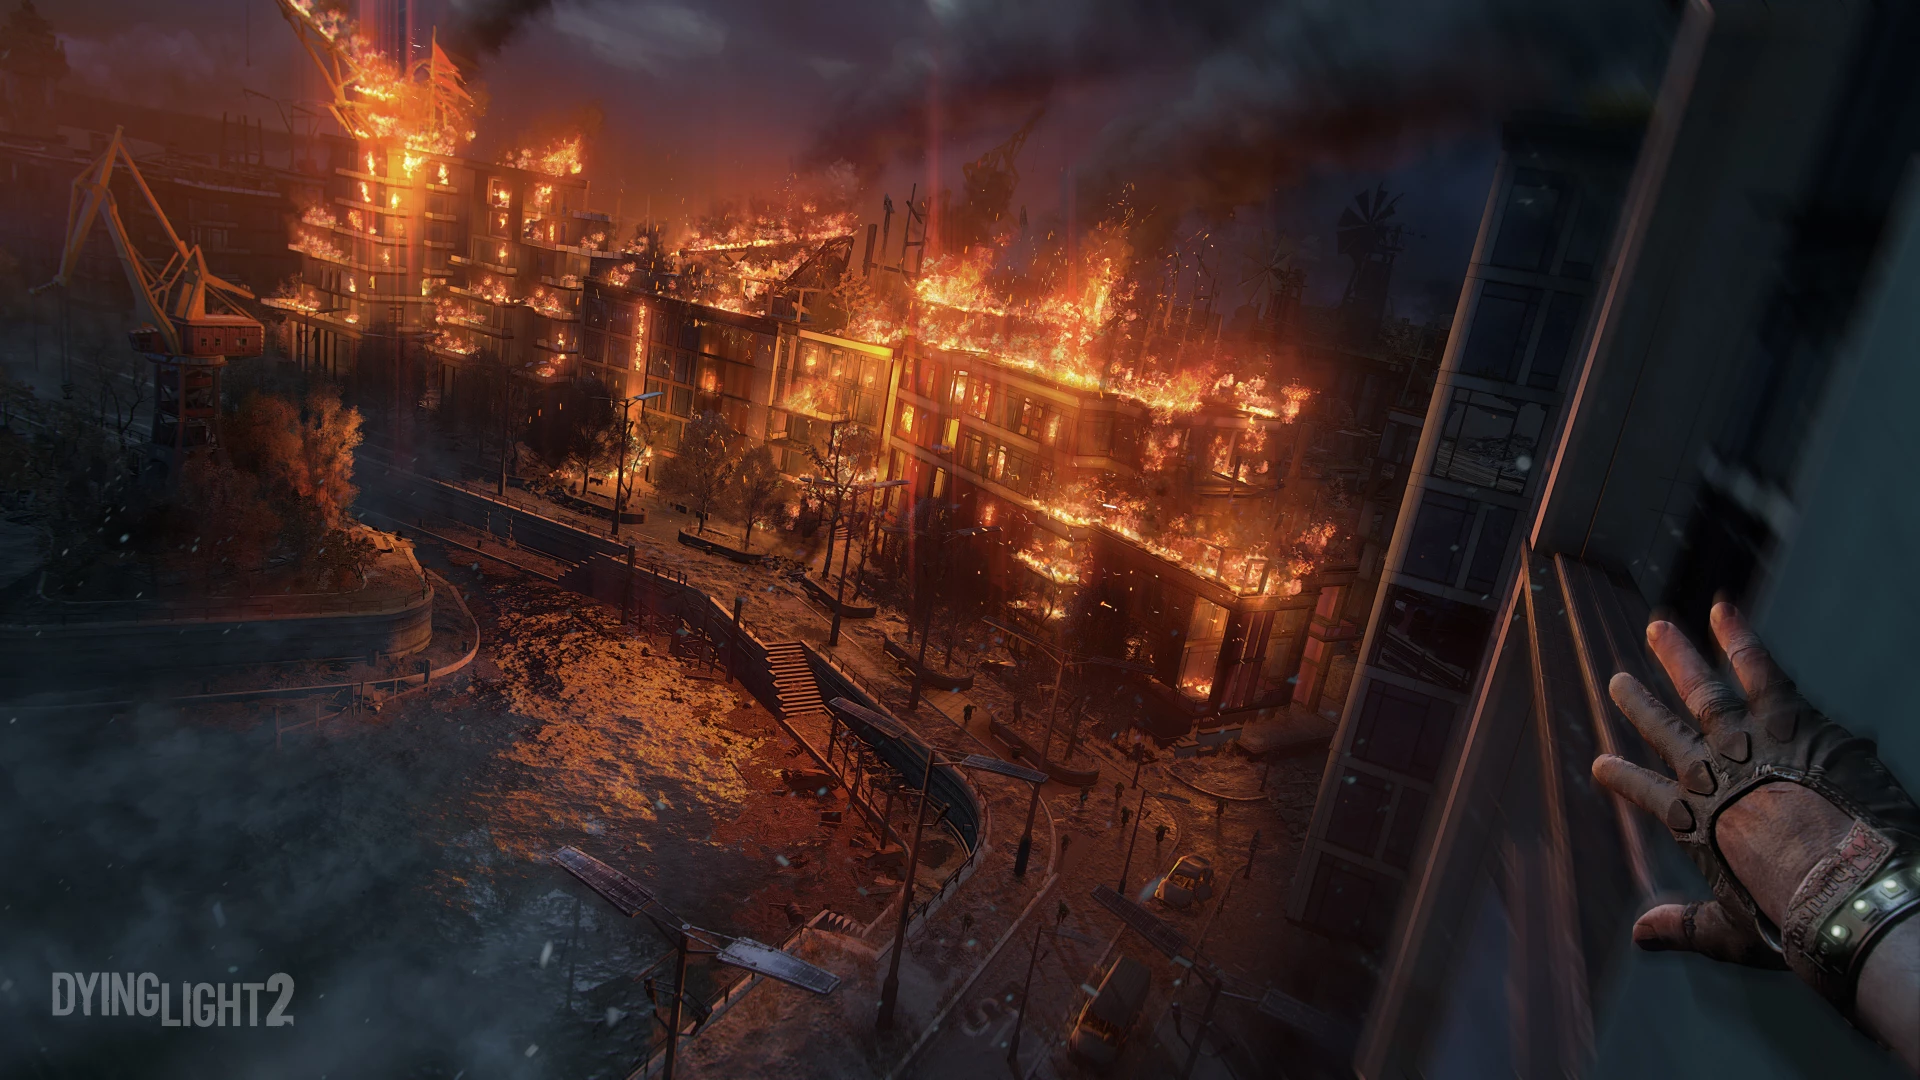 Dying Light 2 Stay Human Deluxe Edition voor de PC Gaming preorder plaatsen op nedgame.nl